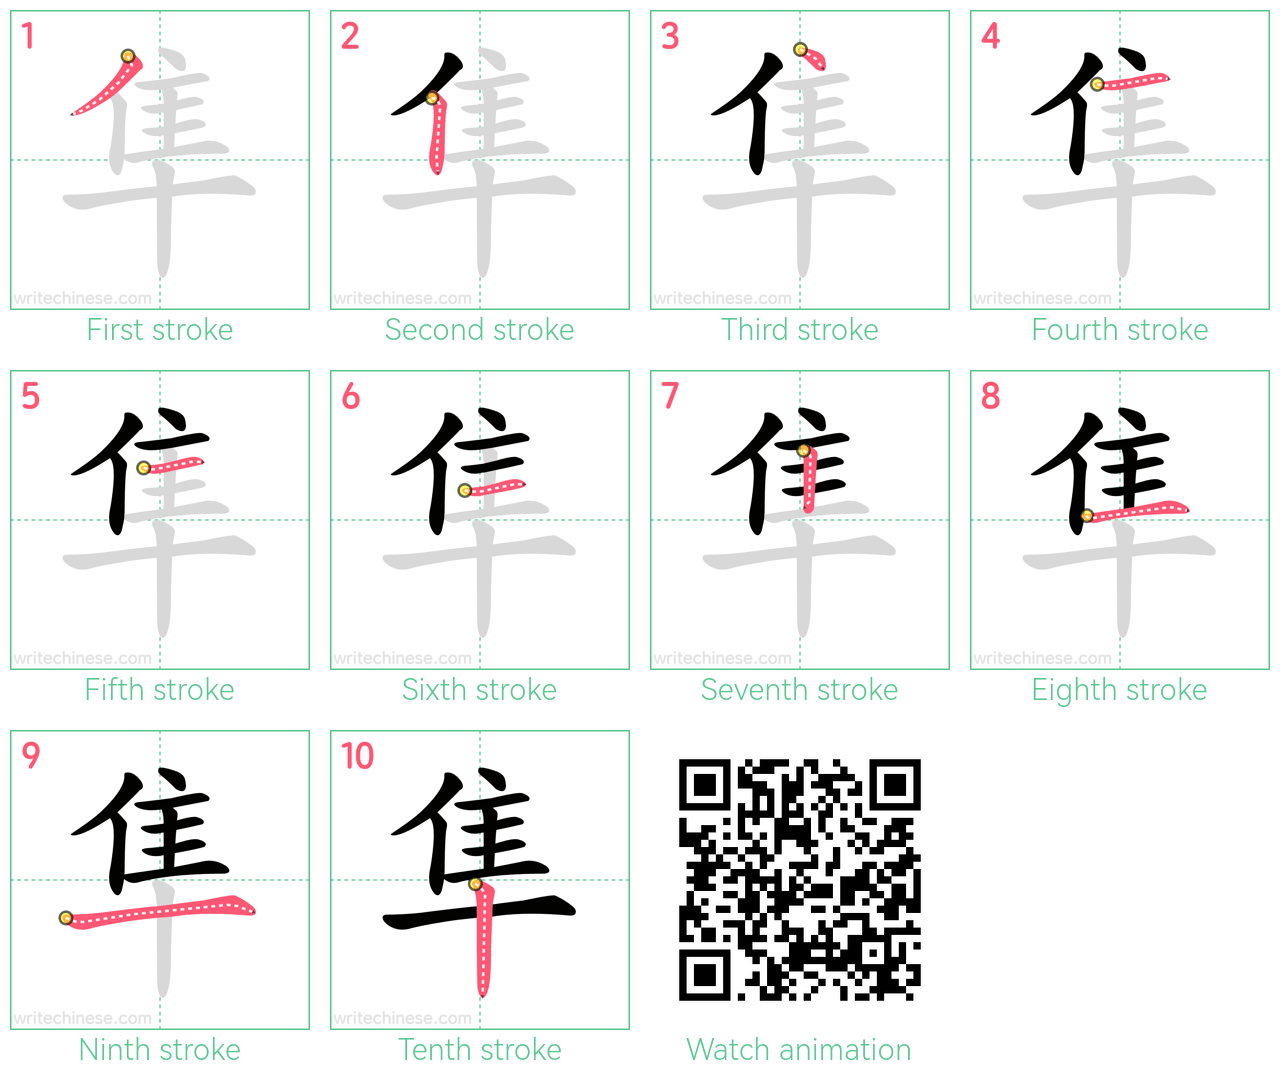 隼 step-by-step stroke order diagrams